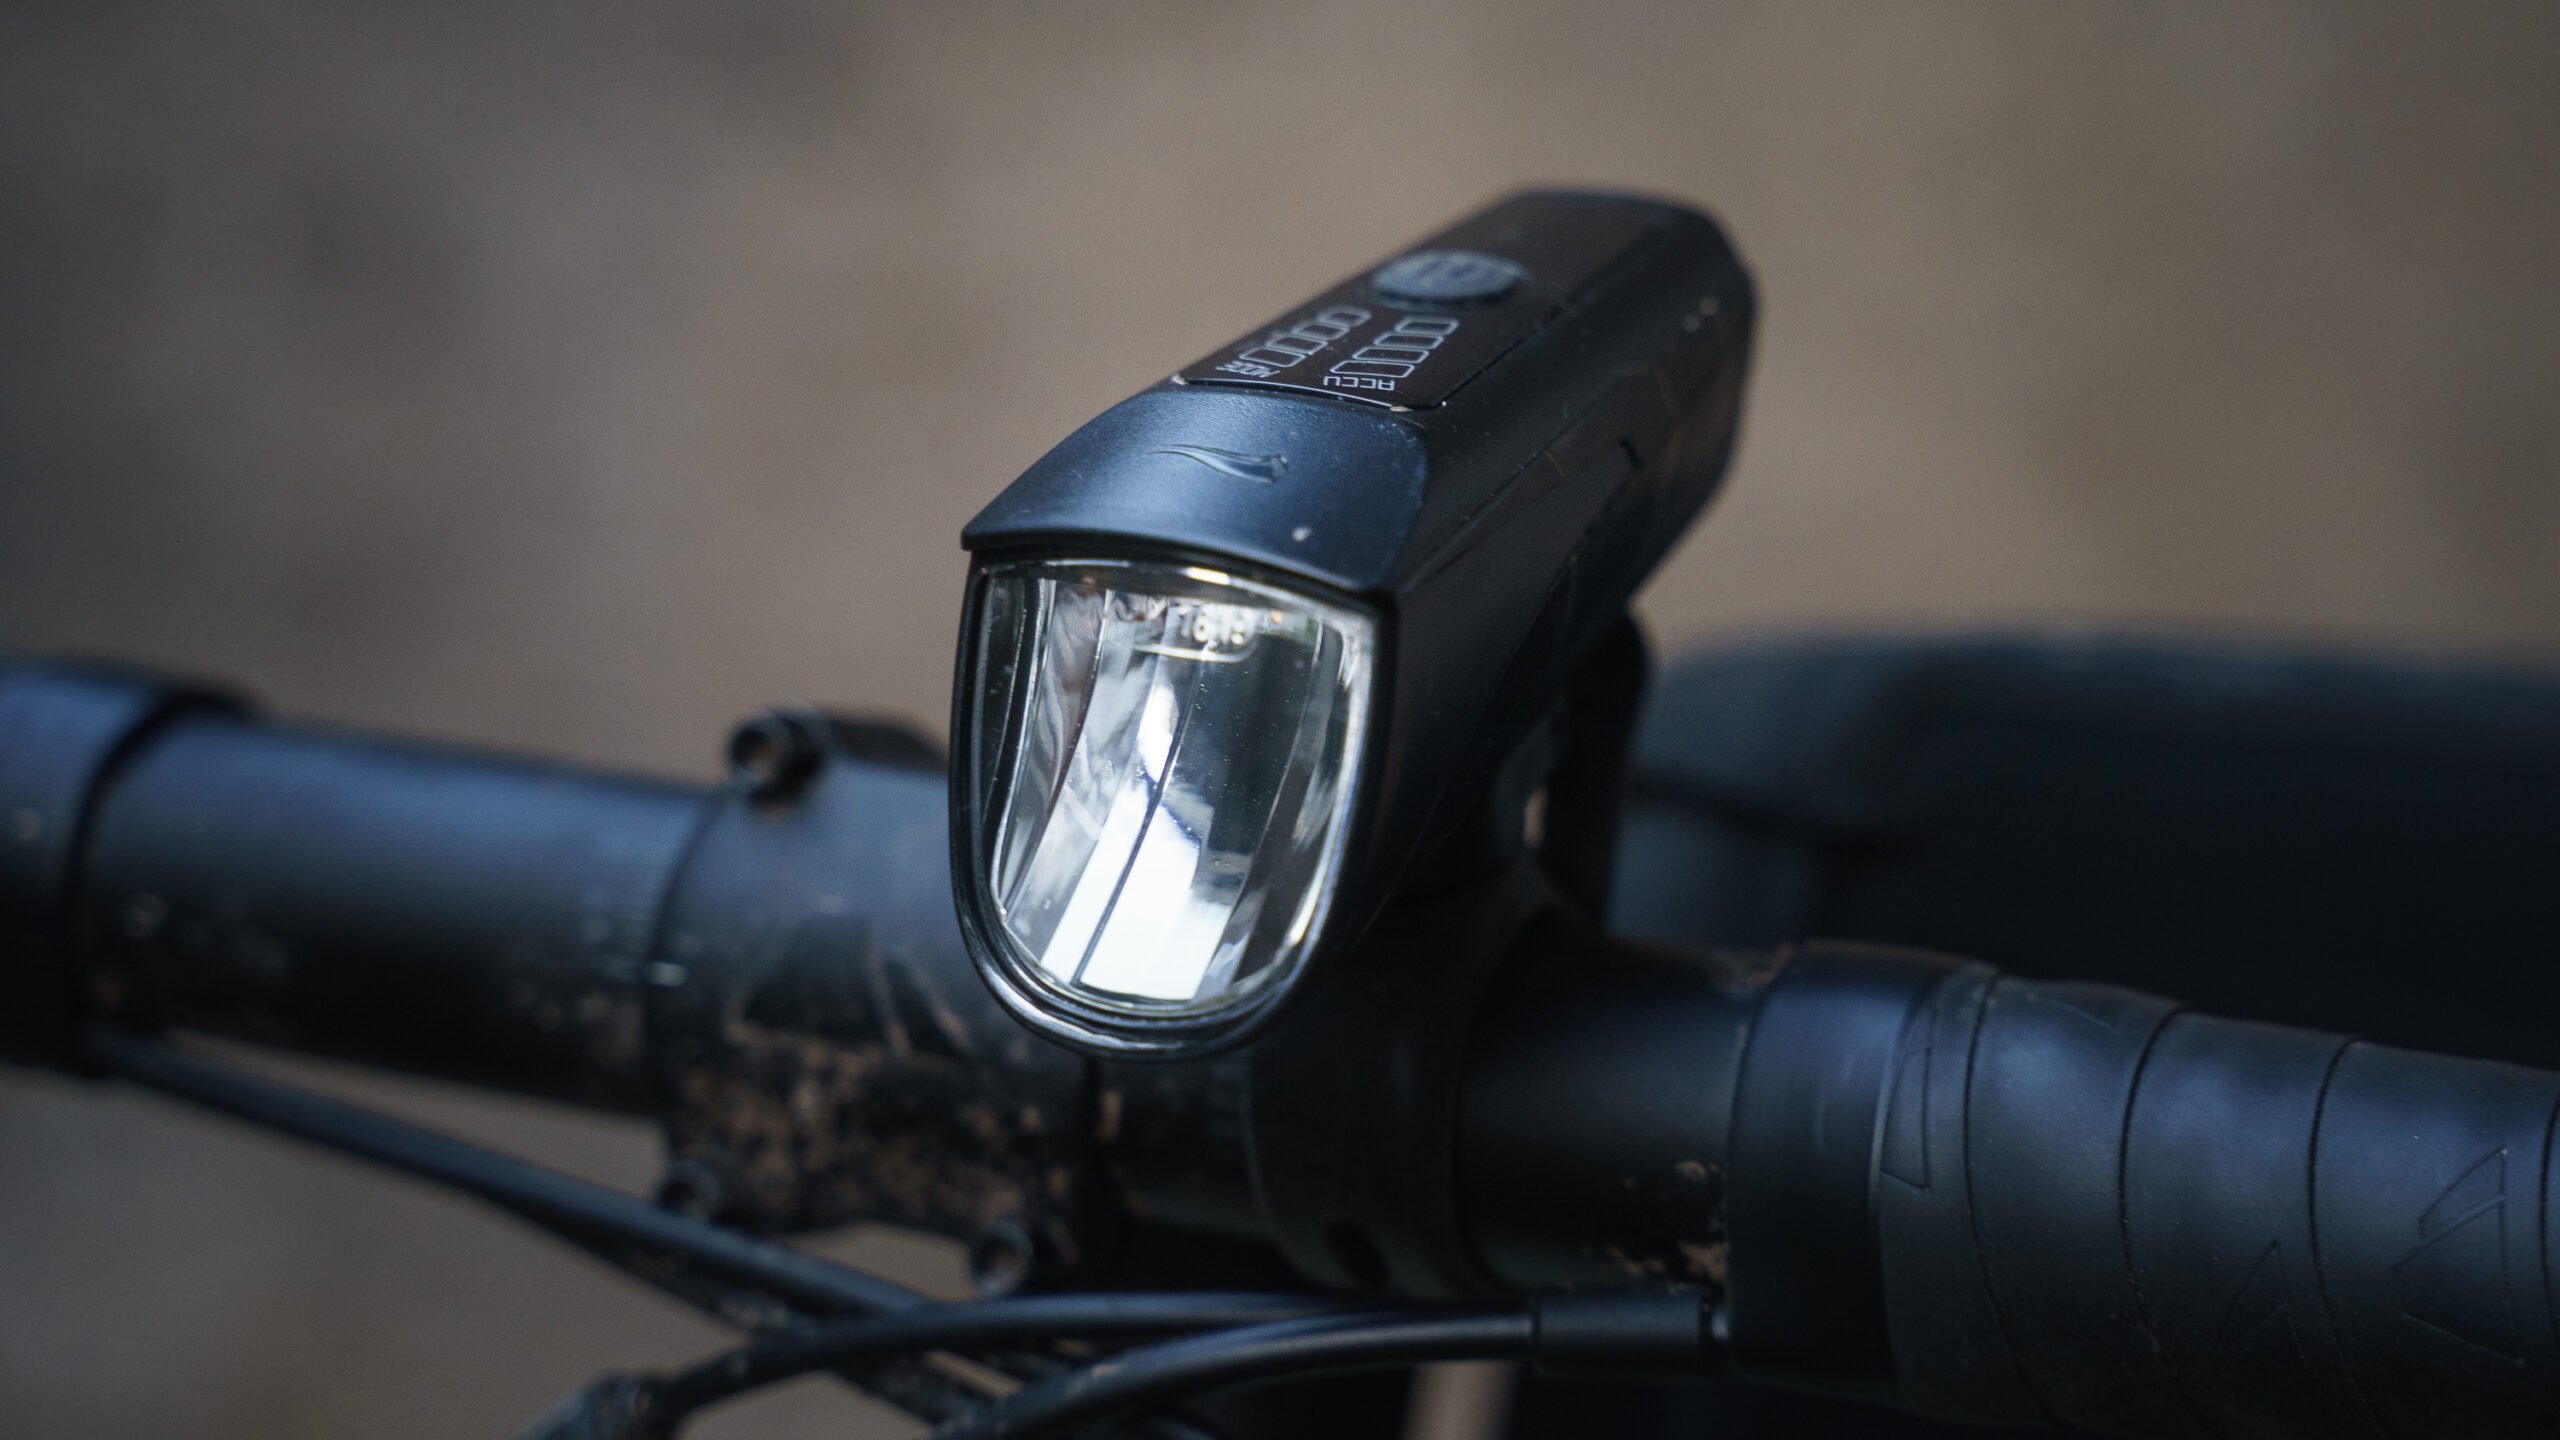 Test: Crivit Was Rennrad-News die Fahrrad-Licht - kann Lidl-Leuchte?